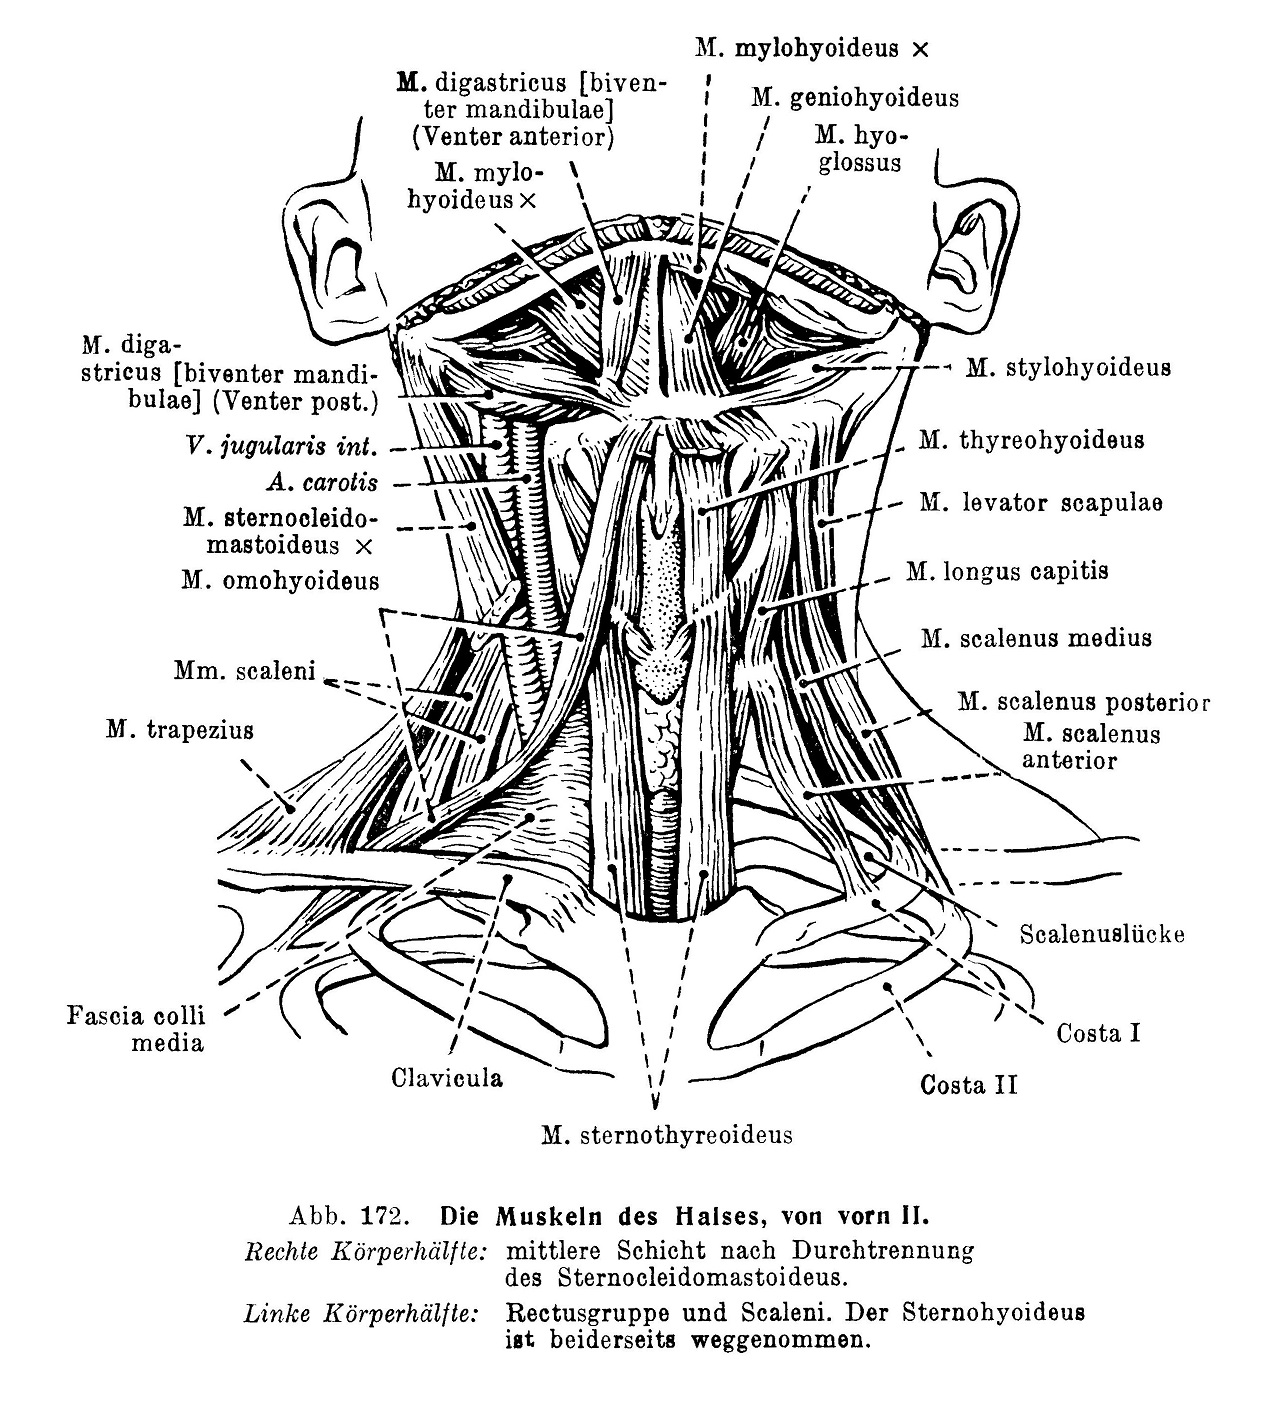 Die Muskeln des Halses, von vorn II